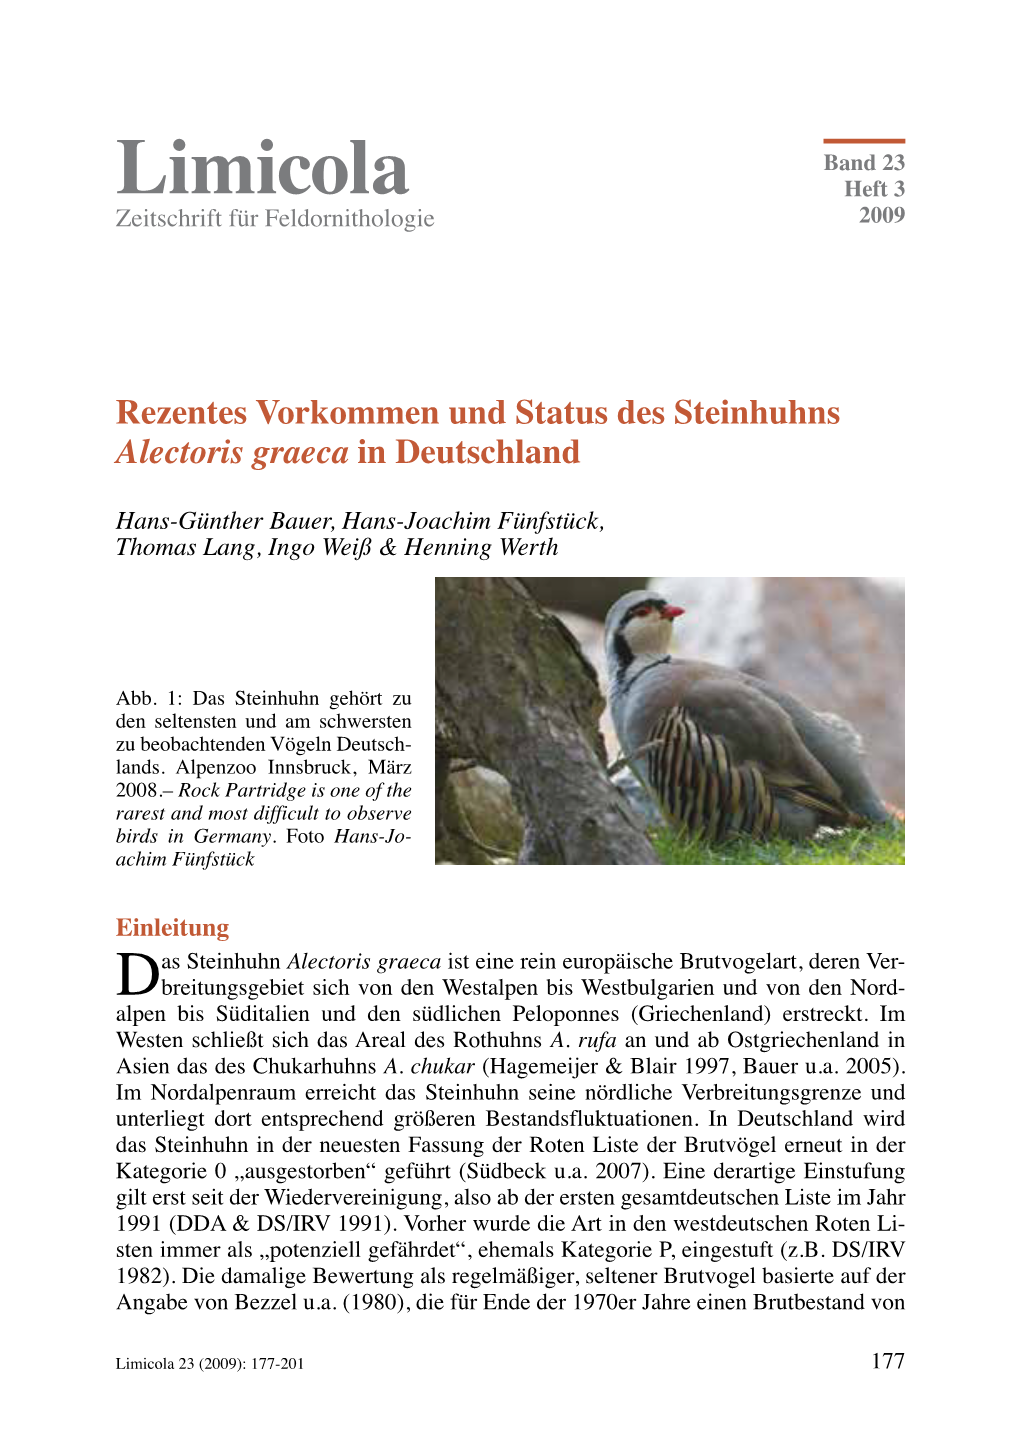 Hans-Günther Bauer U.A. (2009): Rezentes Vorkommen Und Status Des Steinhuhns Alectoris Graeca in Deutschland